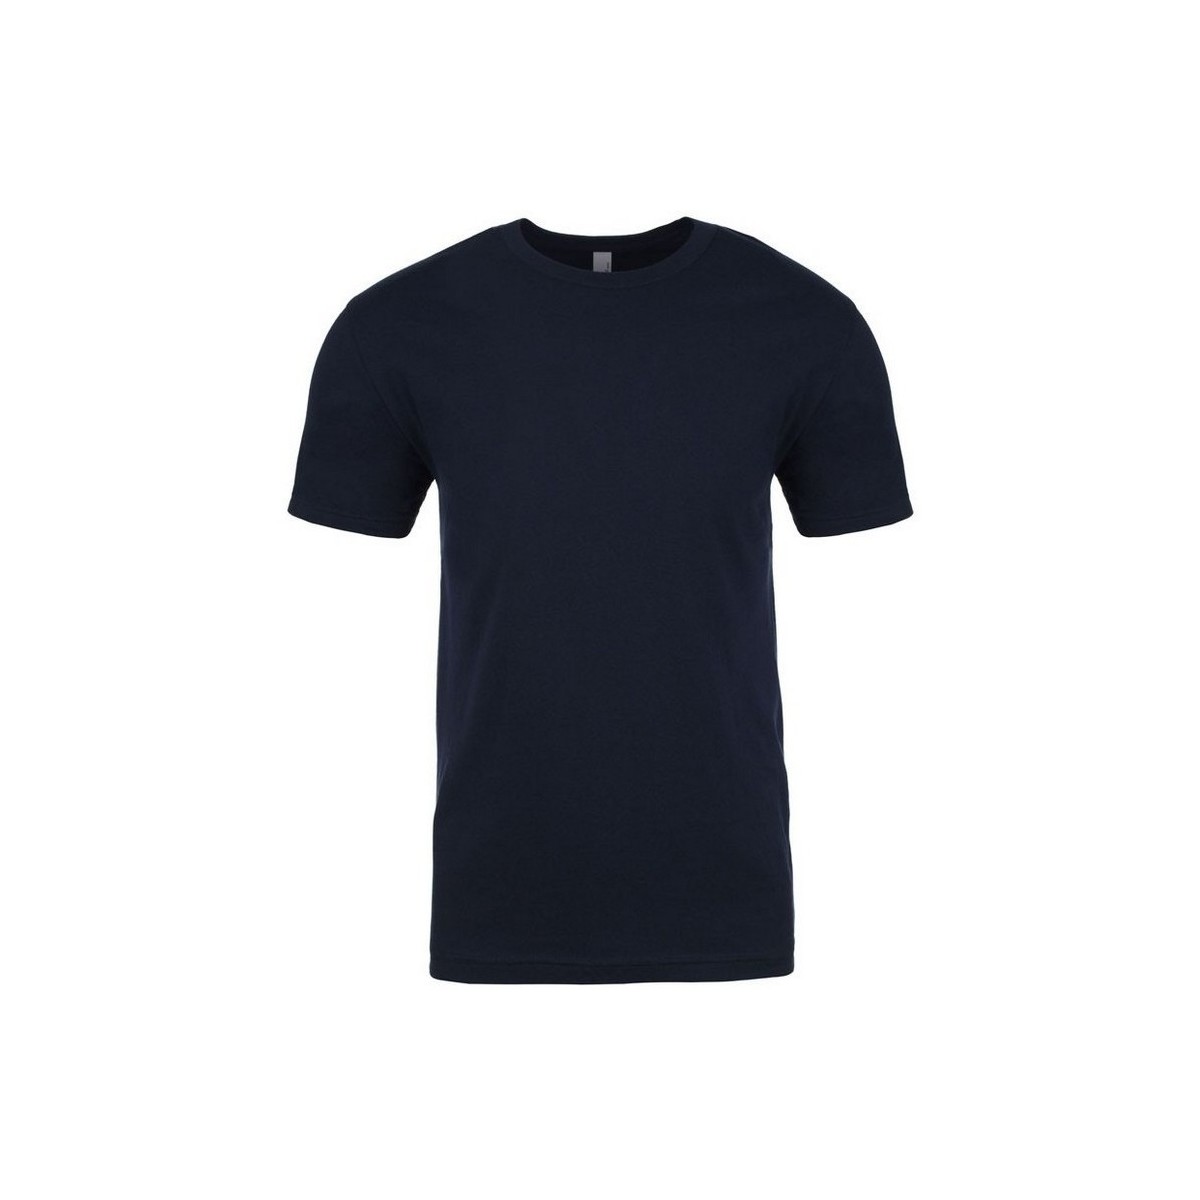 Vêtements T-shirts Showerproof manches longues Next Level NX3600 Bleu